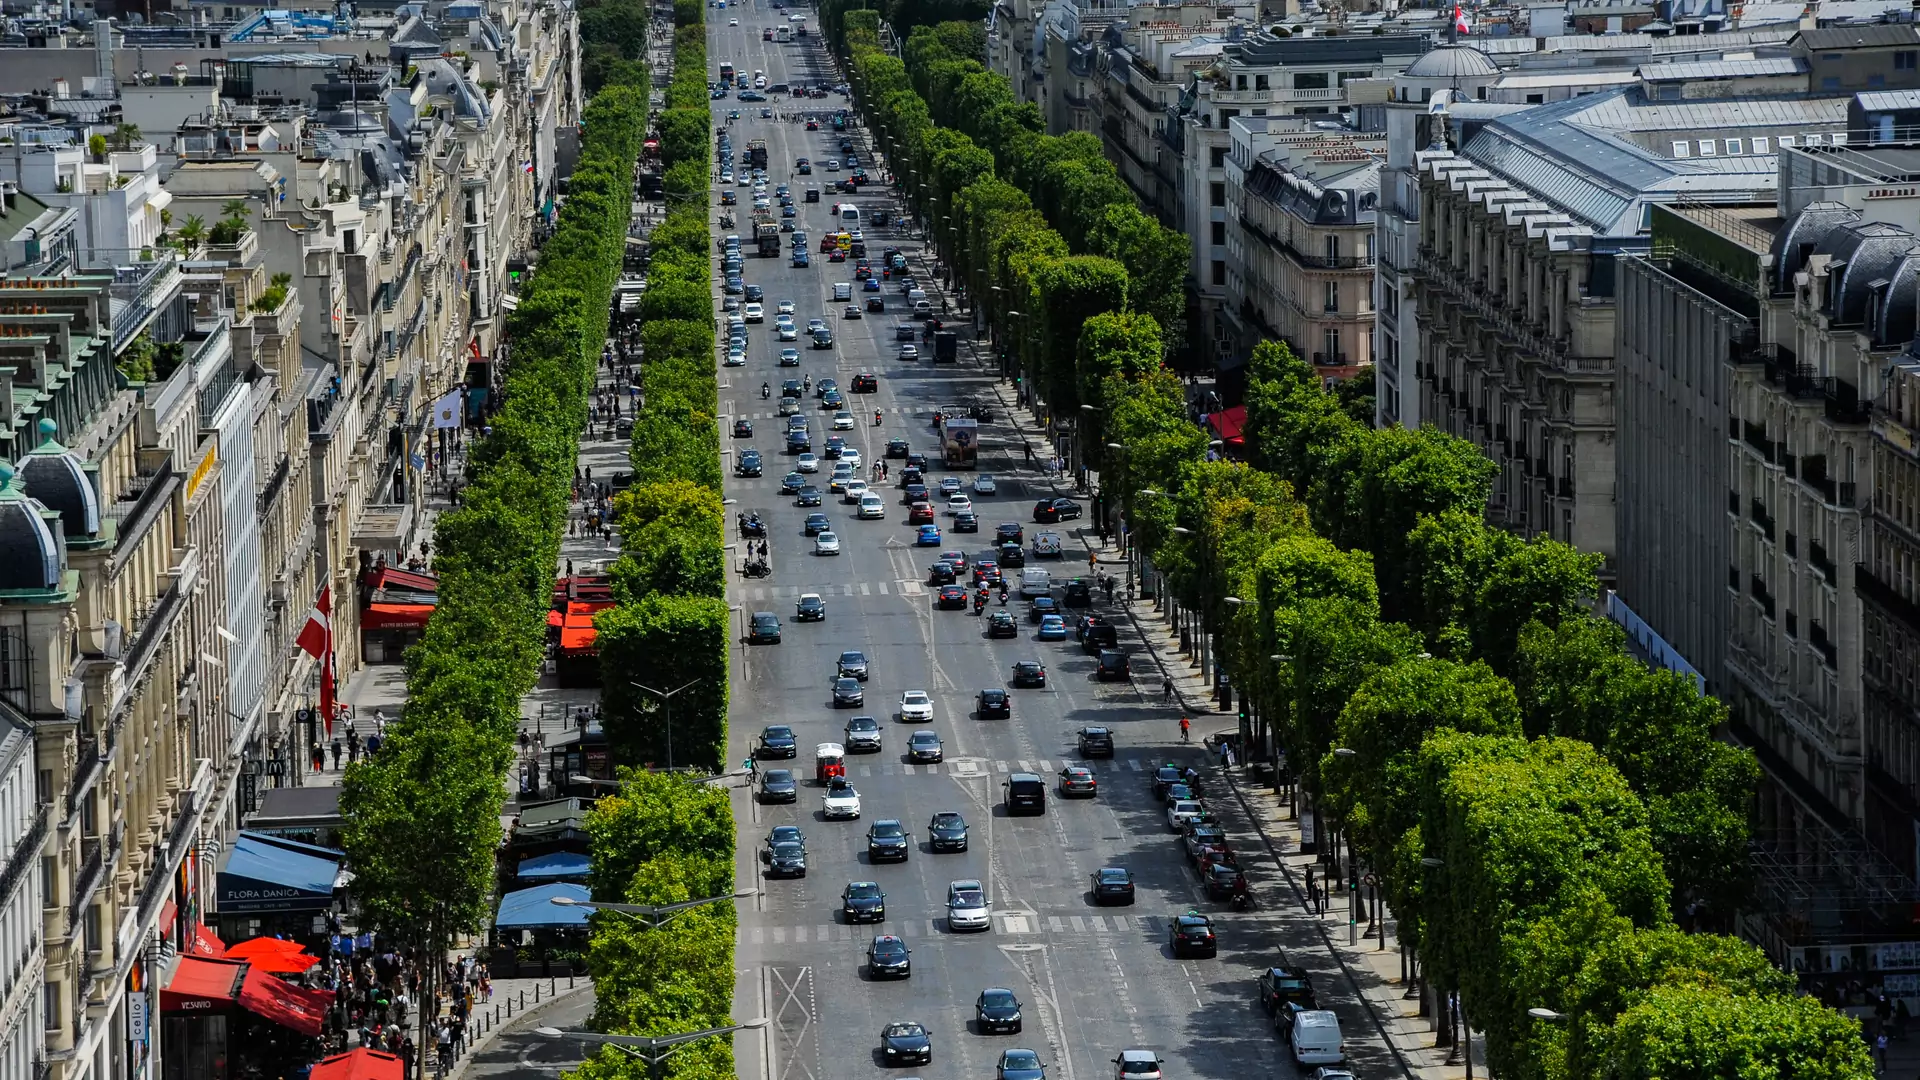 Paryż chce zadbać o pieszych. Ograniczenie do 30 km/h niemal w całym mieście